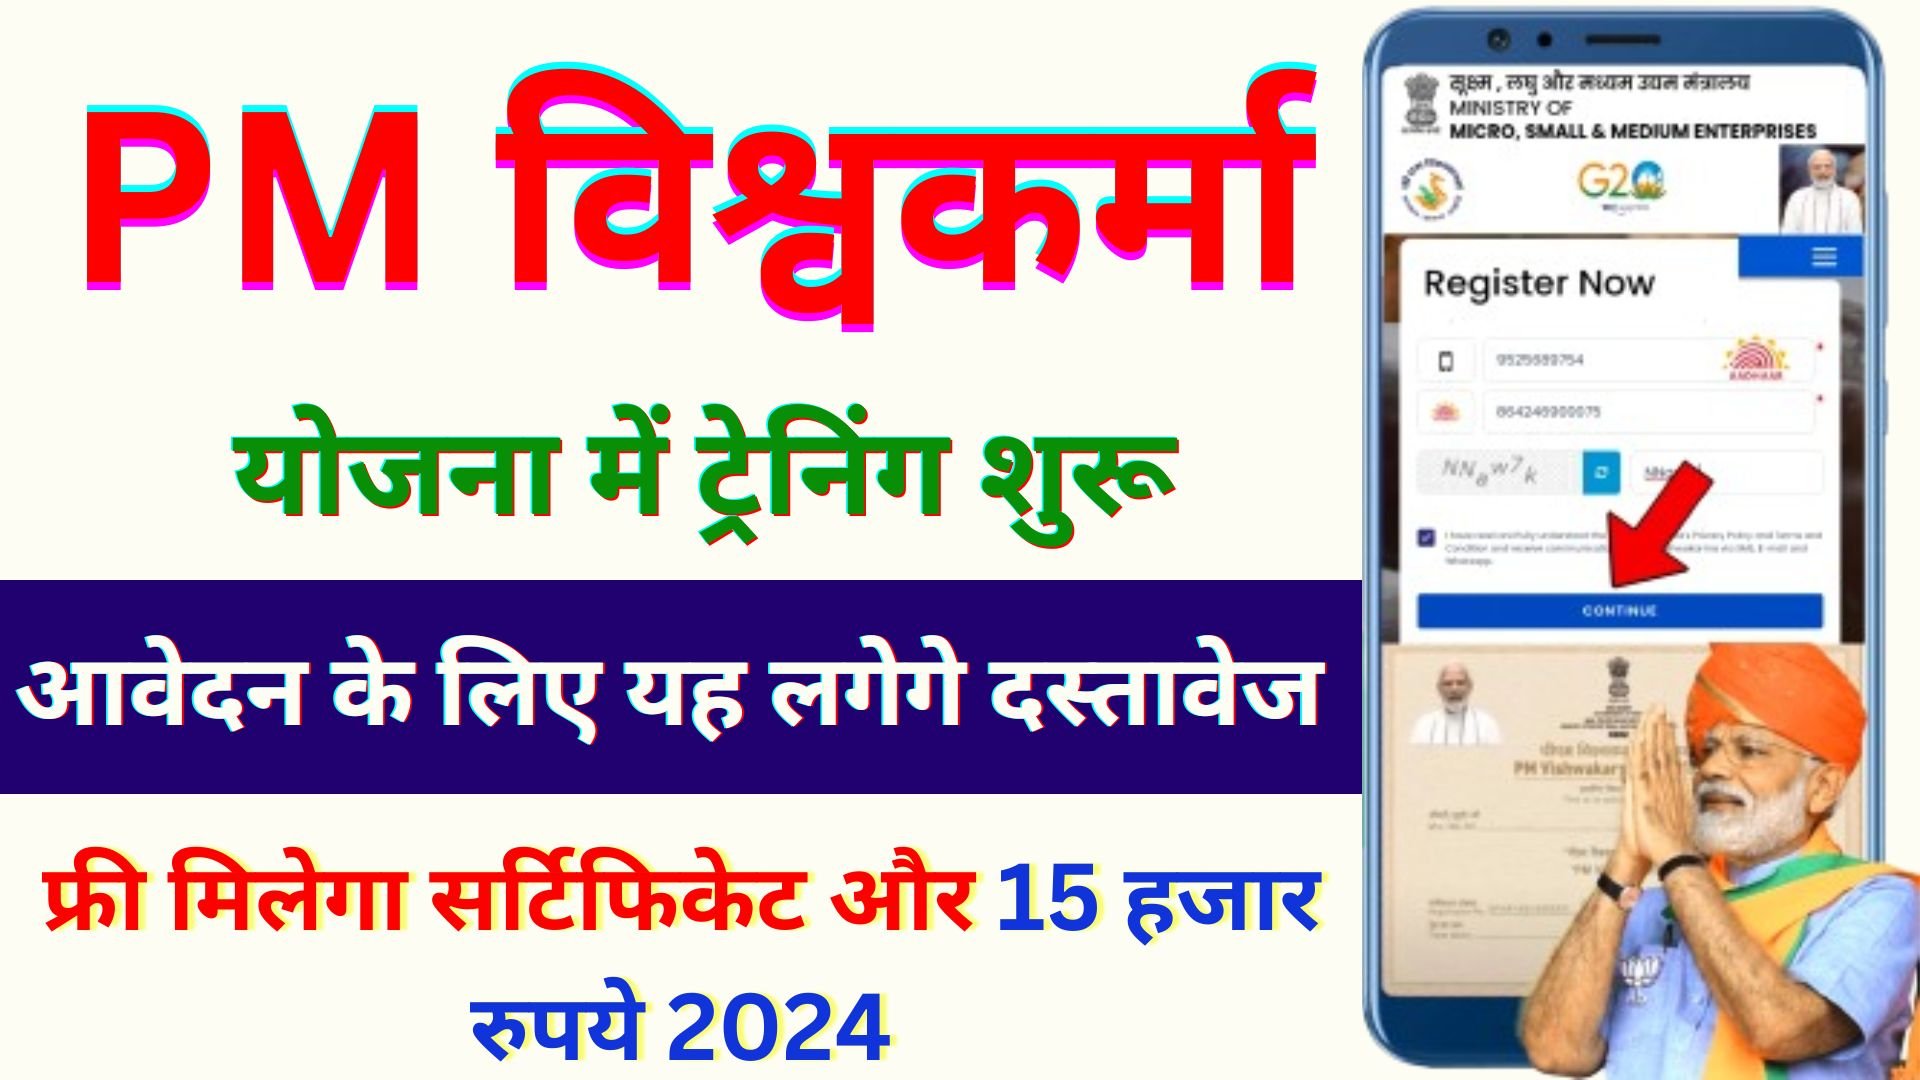 PM Vishwakarma Yojana Training 2024 | Vishwakarma Yojana Training Kaise Hoti hai | विश्वकर्मा योजना ट्रेनिंग